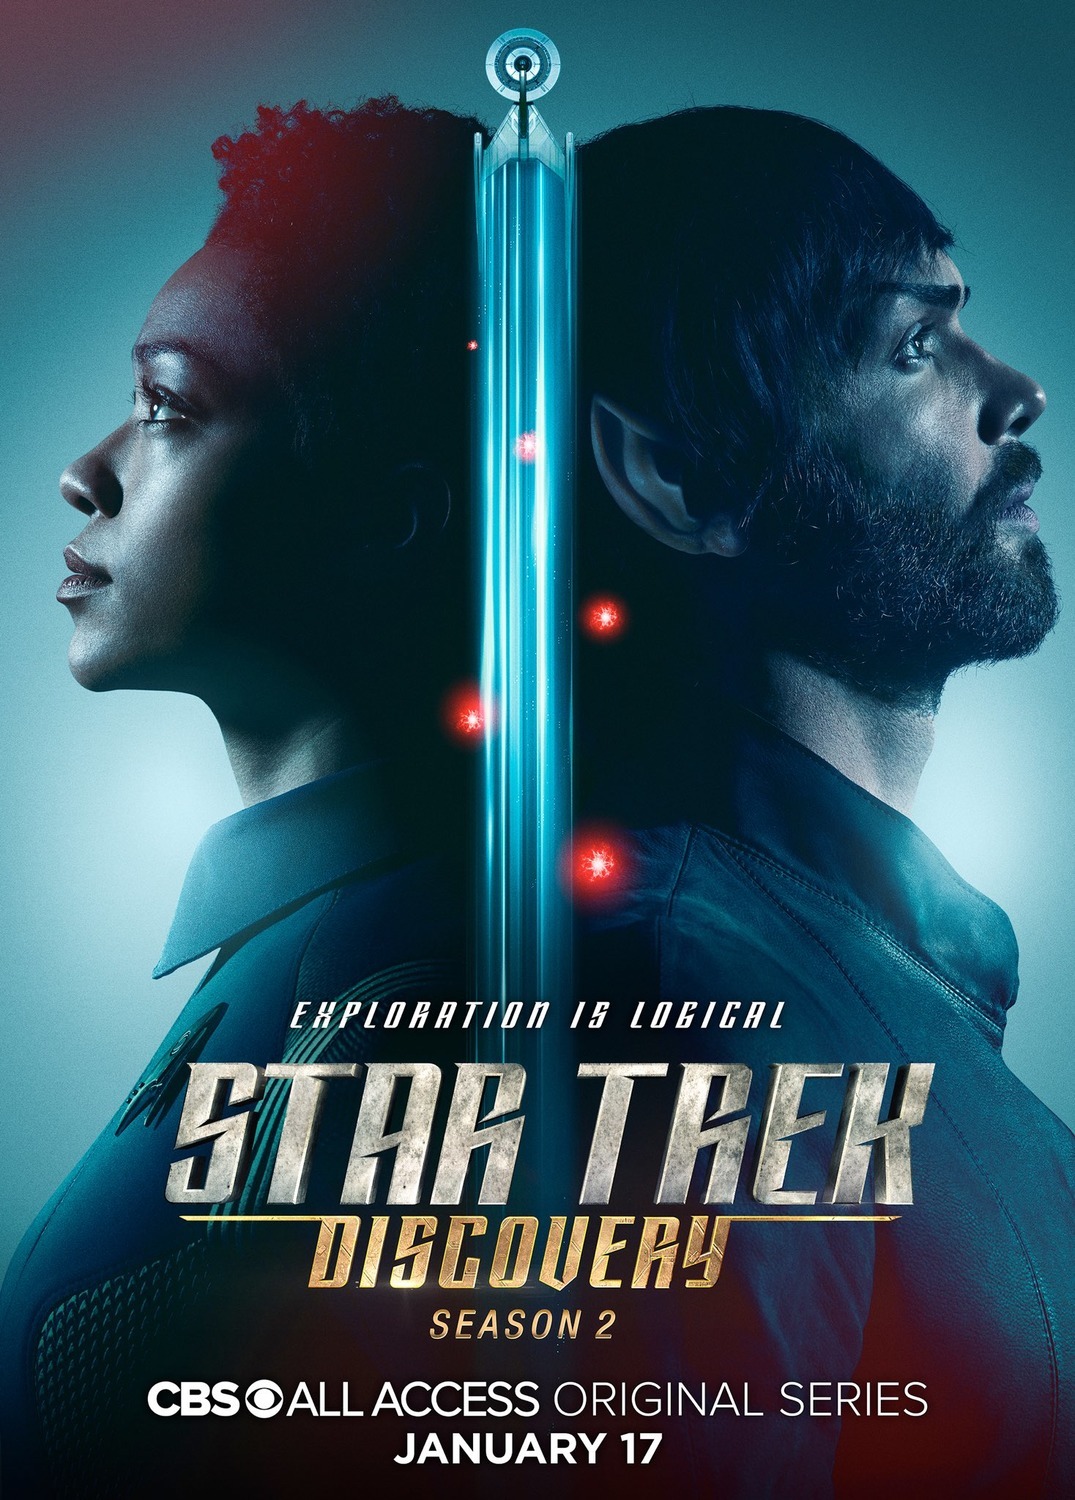 ดูหนังออนไลน์ฟรี Star Trek Discovery Season 2 EP.8 สตาร์ เทรค ดิสคัฟเวอรี่ ซีซั่นที่ 2 ตอนที่ 8